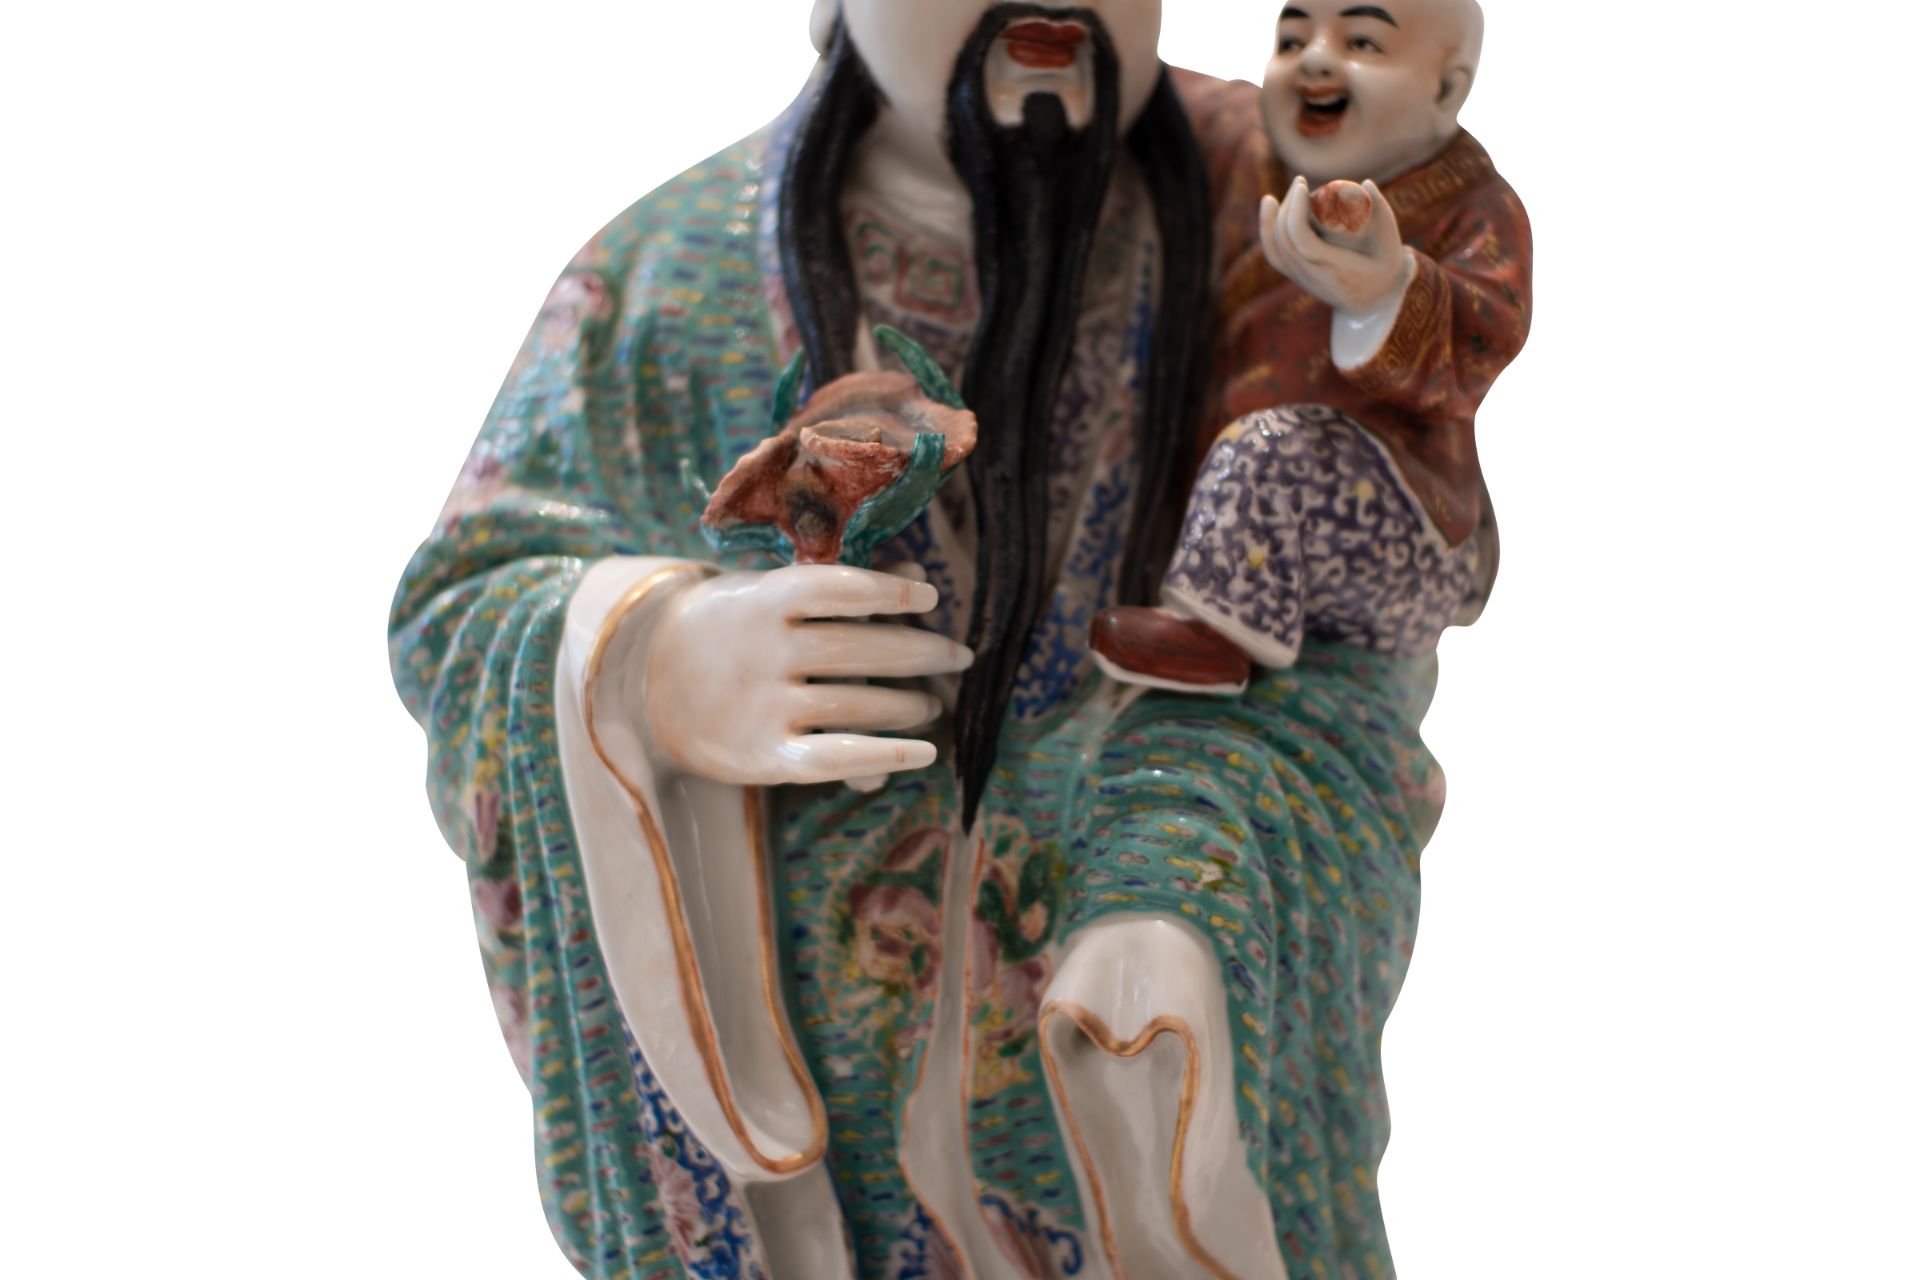 Asian Priest with Child | Asiatischer Priester mit Kind - Bild 3 aus 9